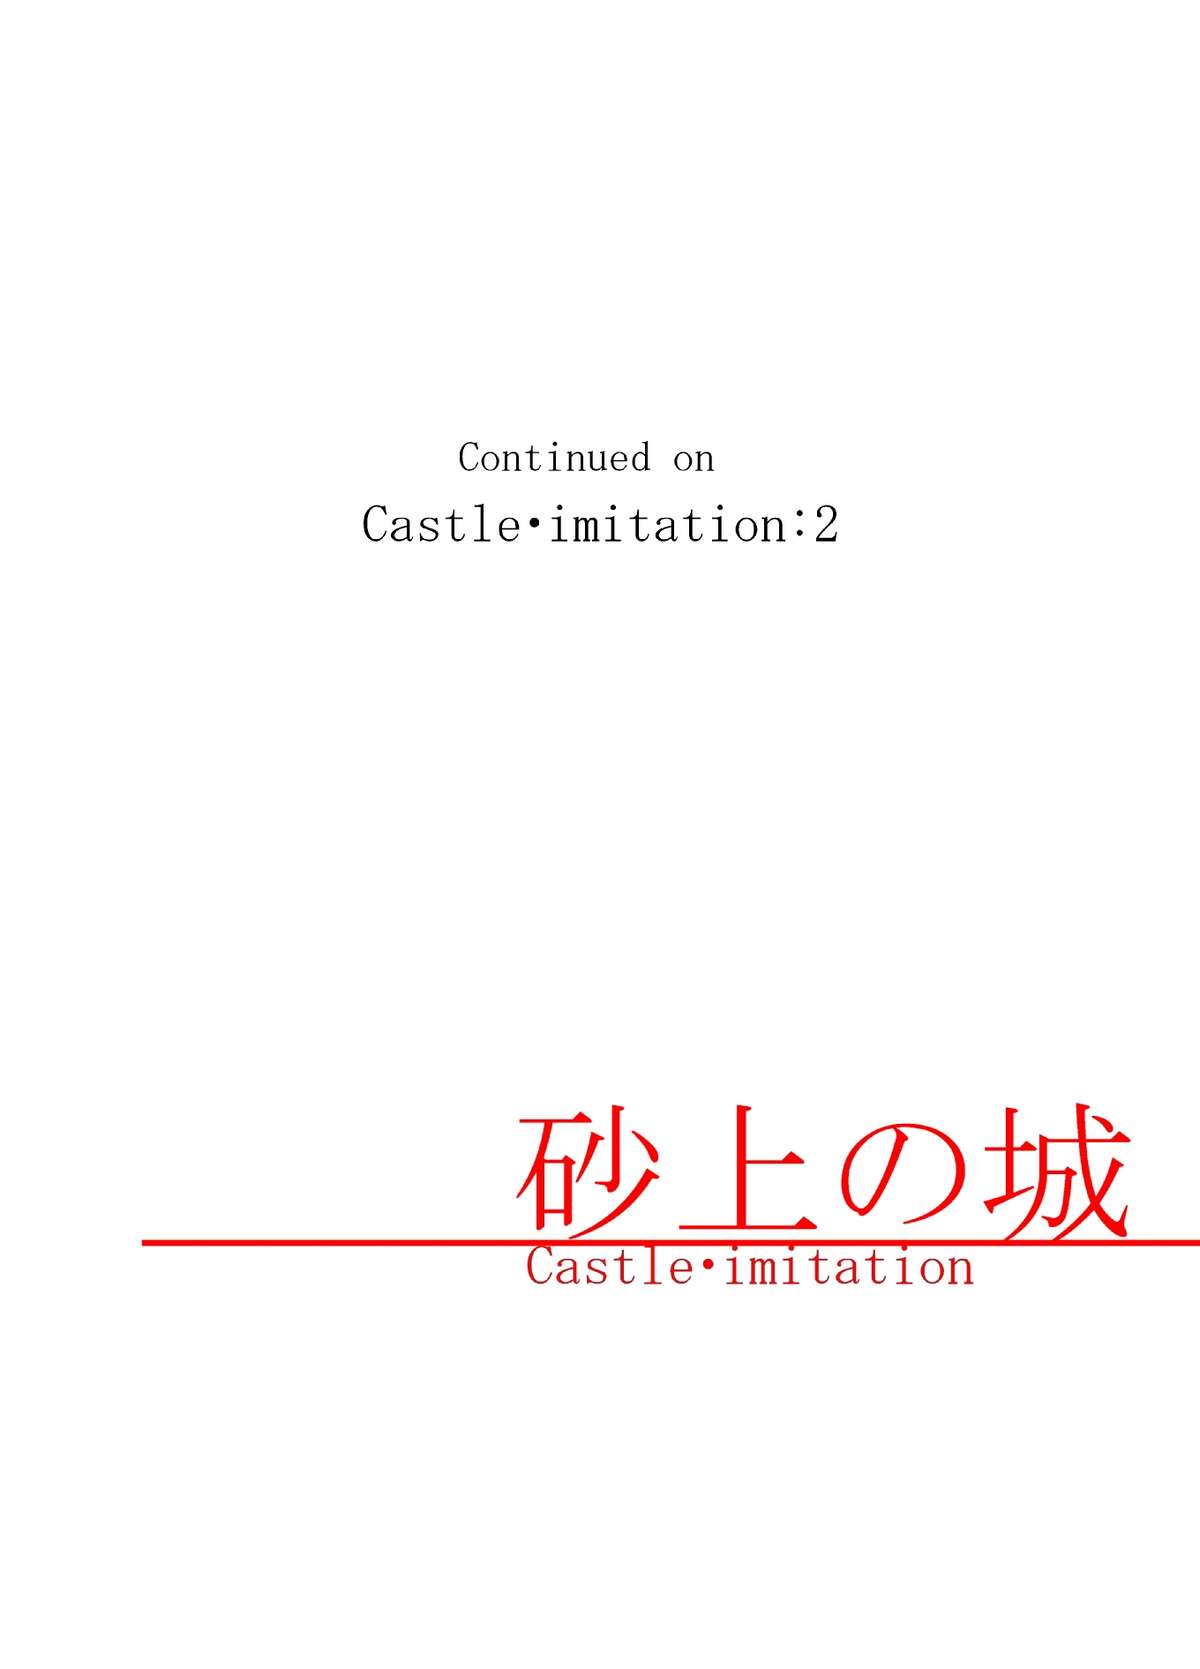 [ノス虎ダム男onメルカトル図法] 砂上の城/Castle・imitation